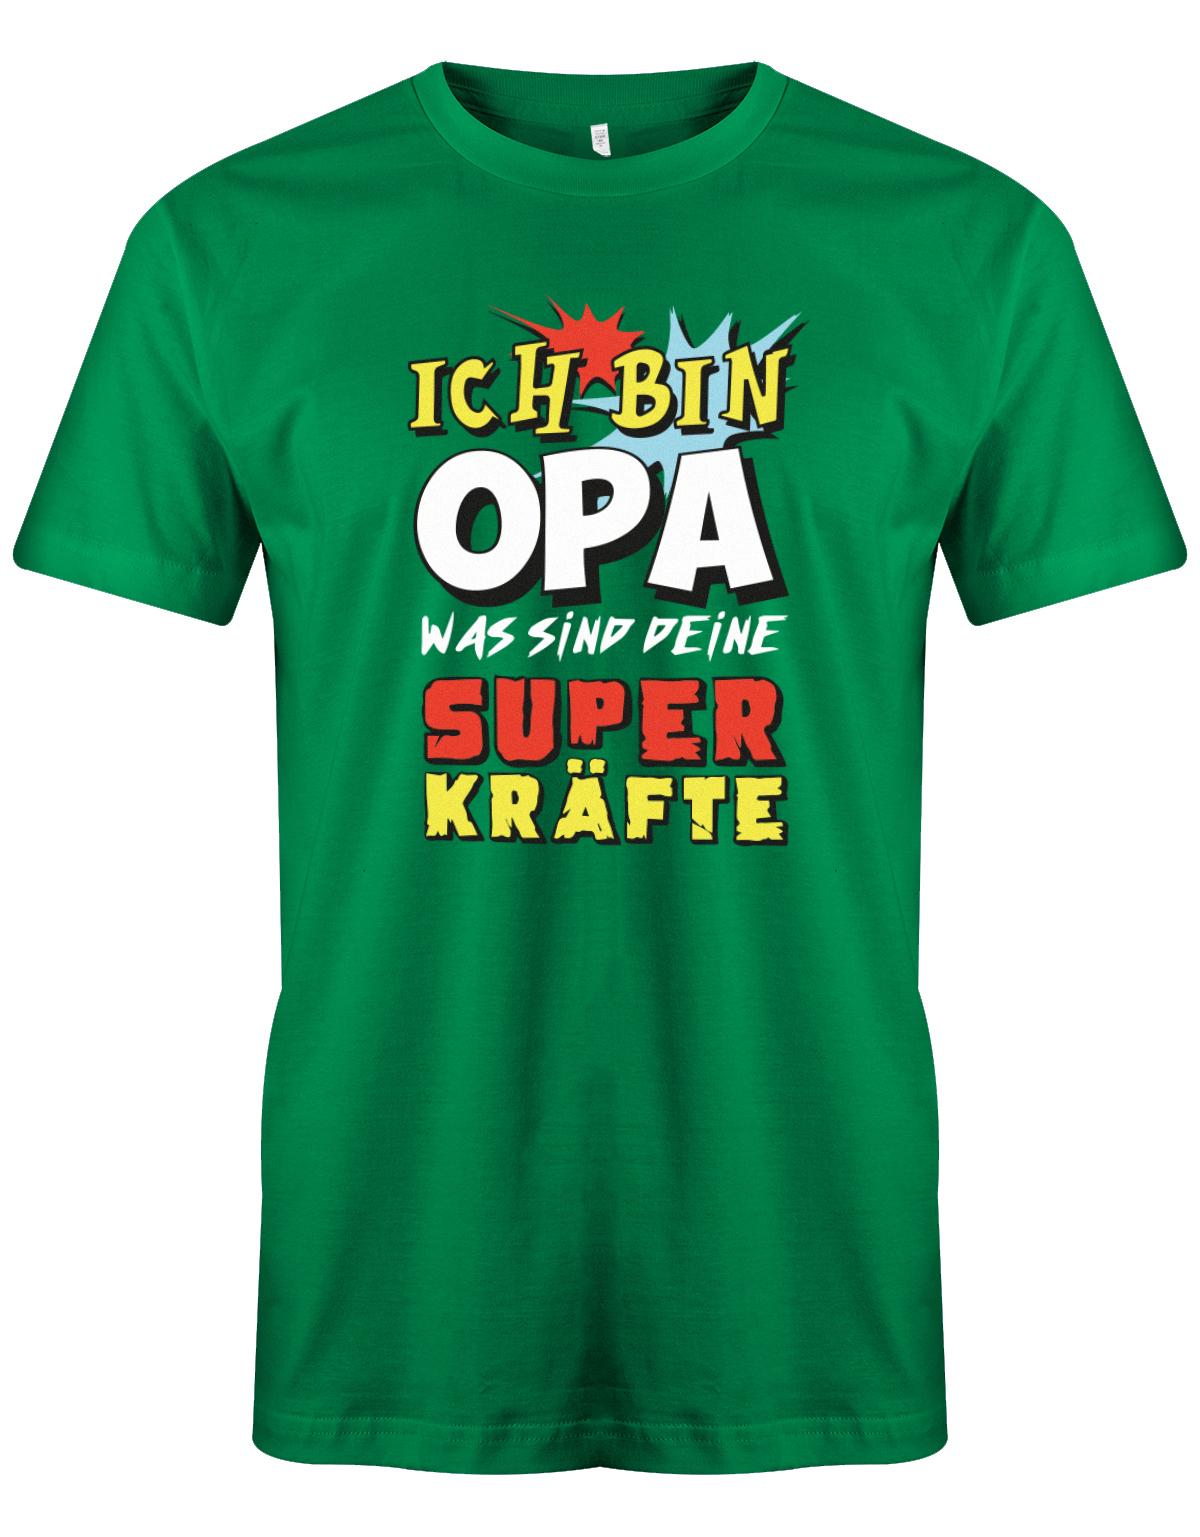 Opa T-Shirt – Ich bin Opa was sind deine Superkräfte Grün